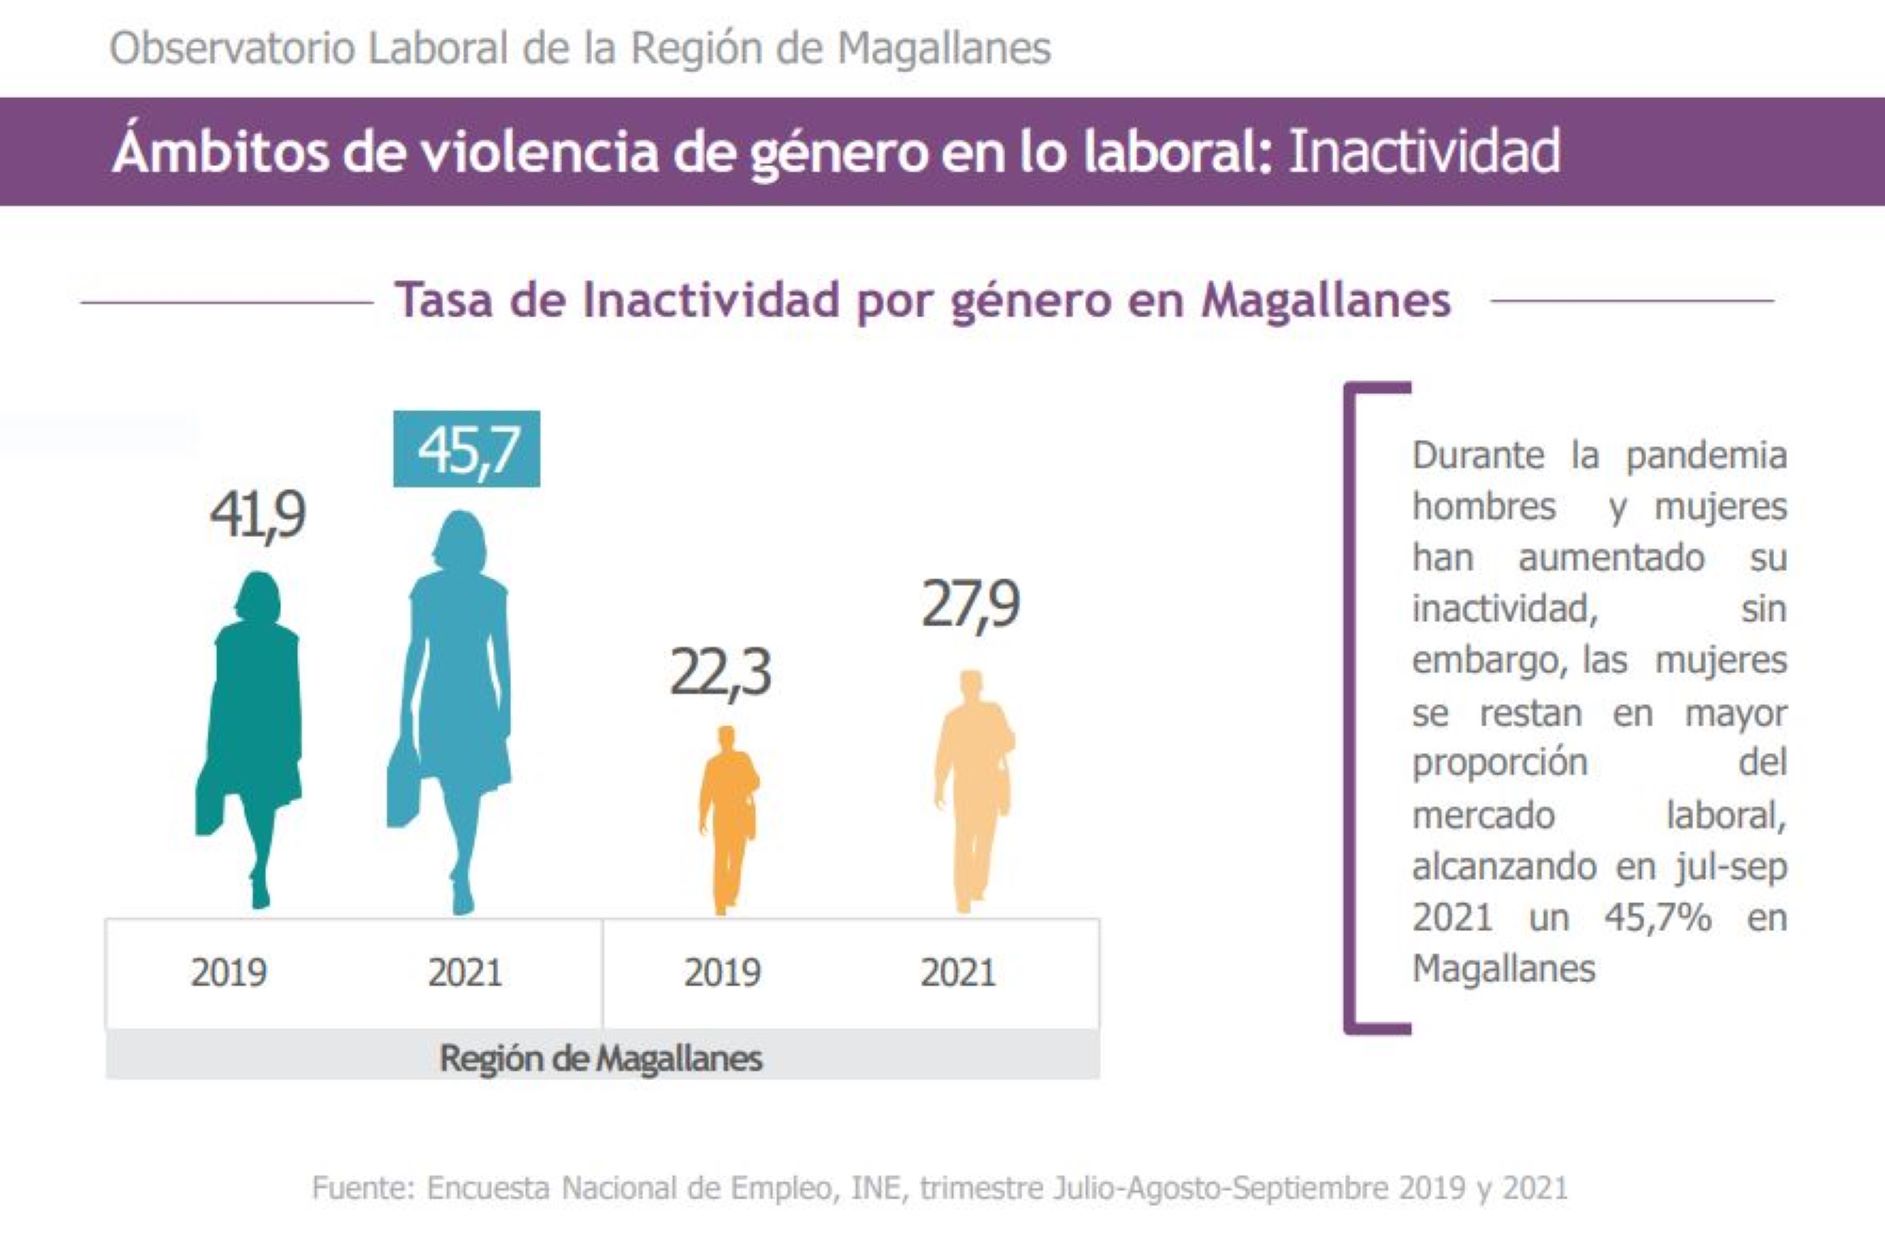 Observatorio Laboral de Magallanes presenta datos sobre violencia de género en el ámbito laboral en la región